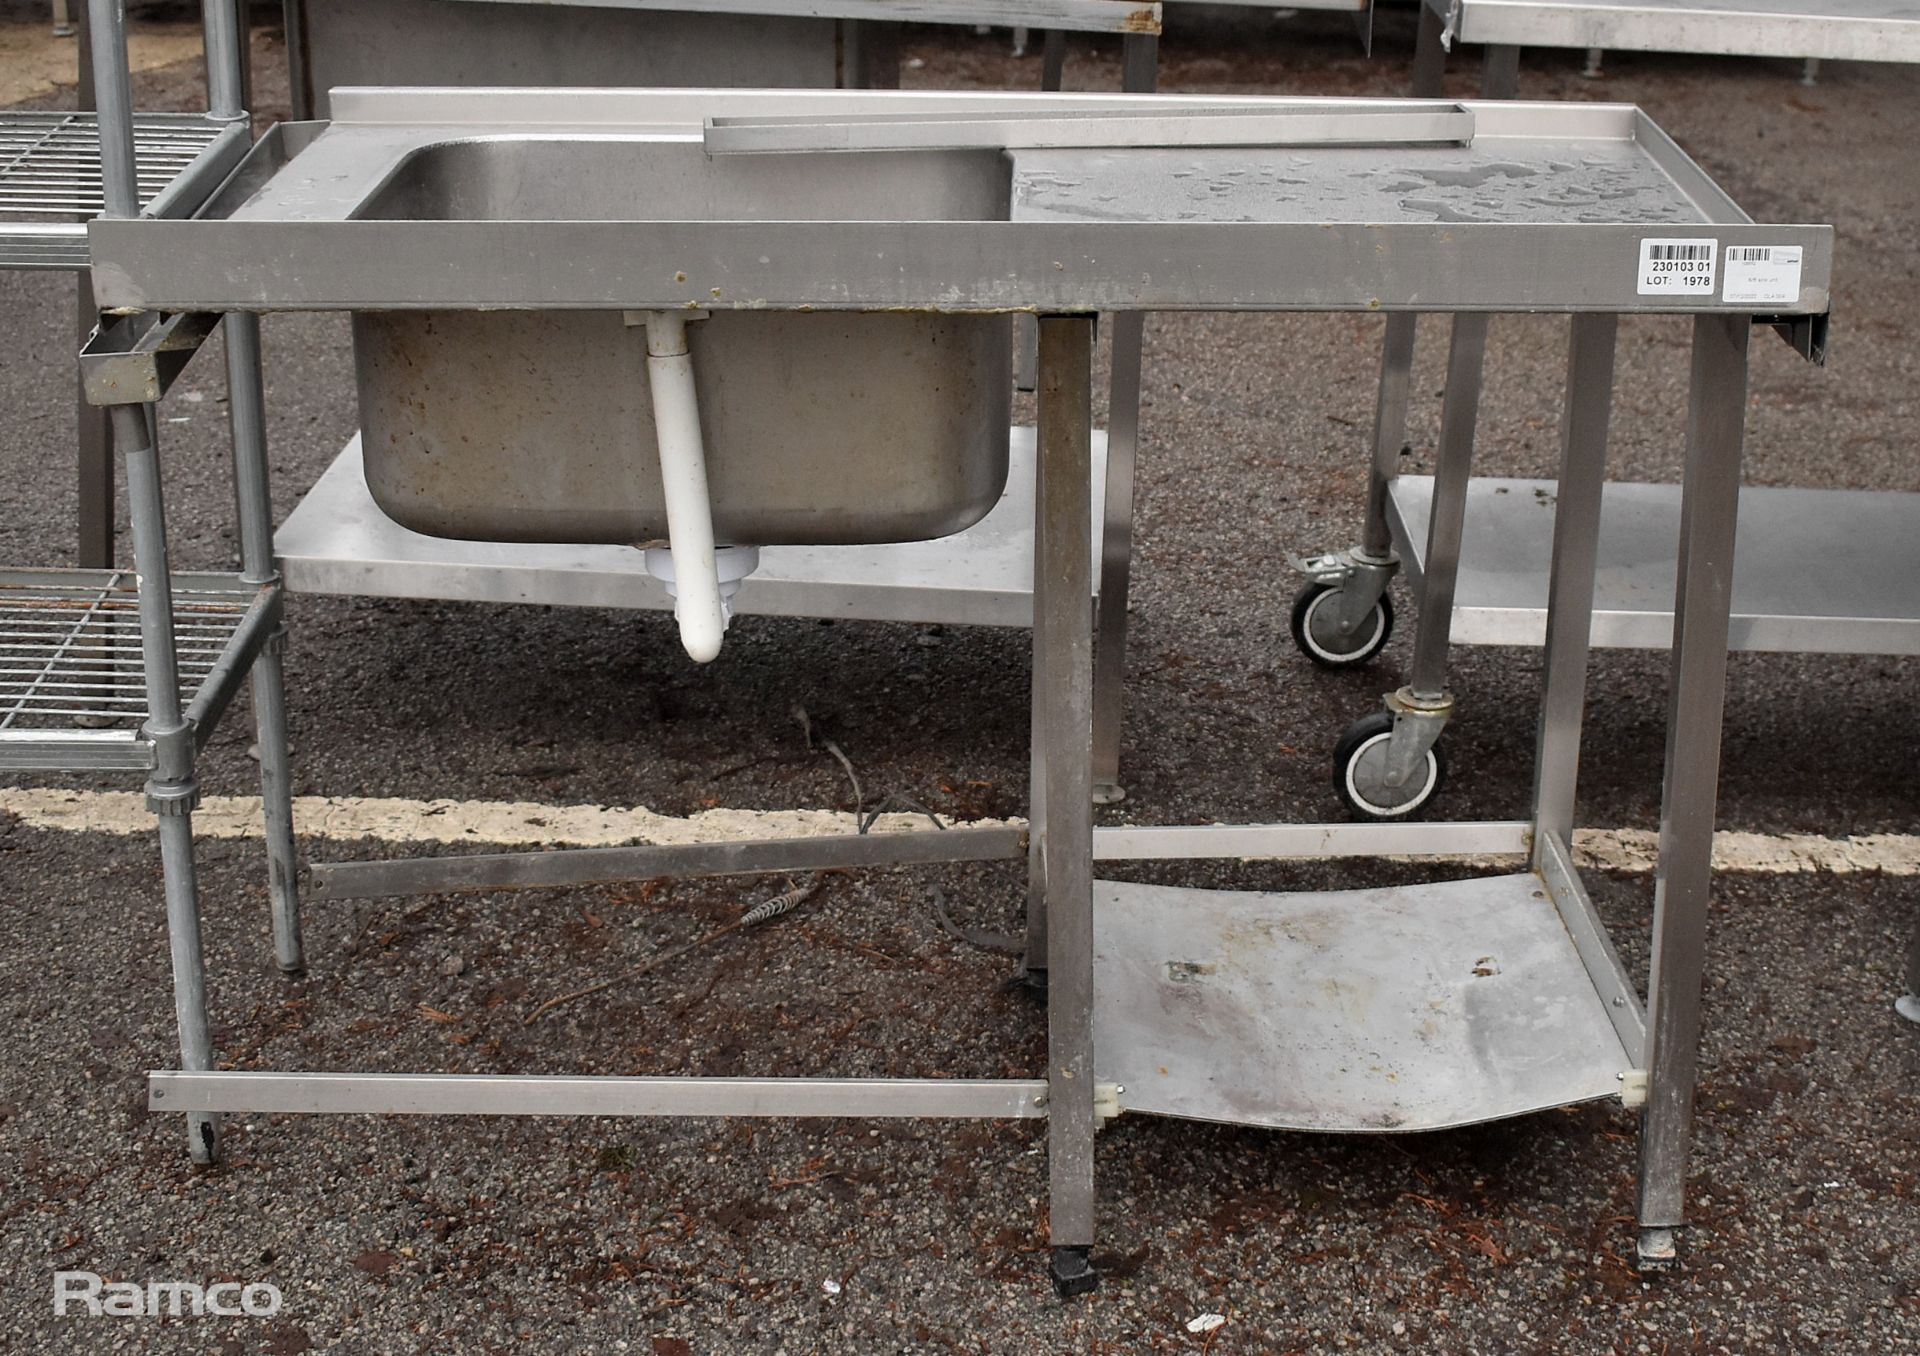 Stainless steel sink unit - L120 x D75 x H94cm